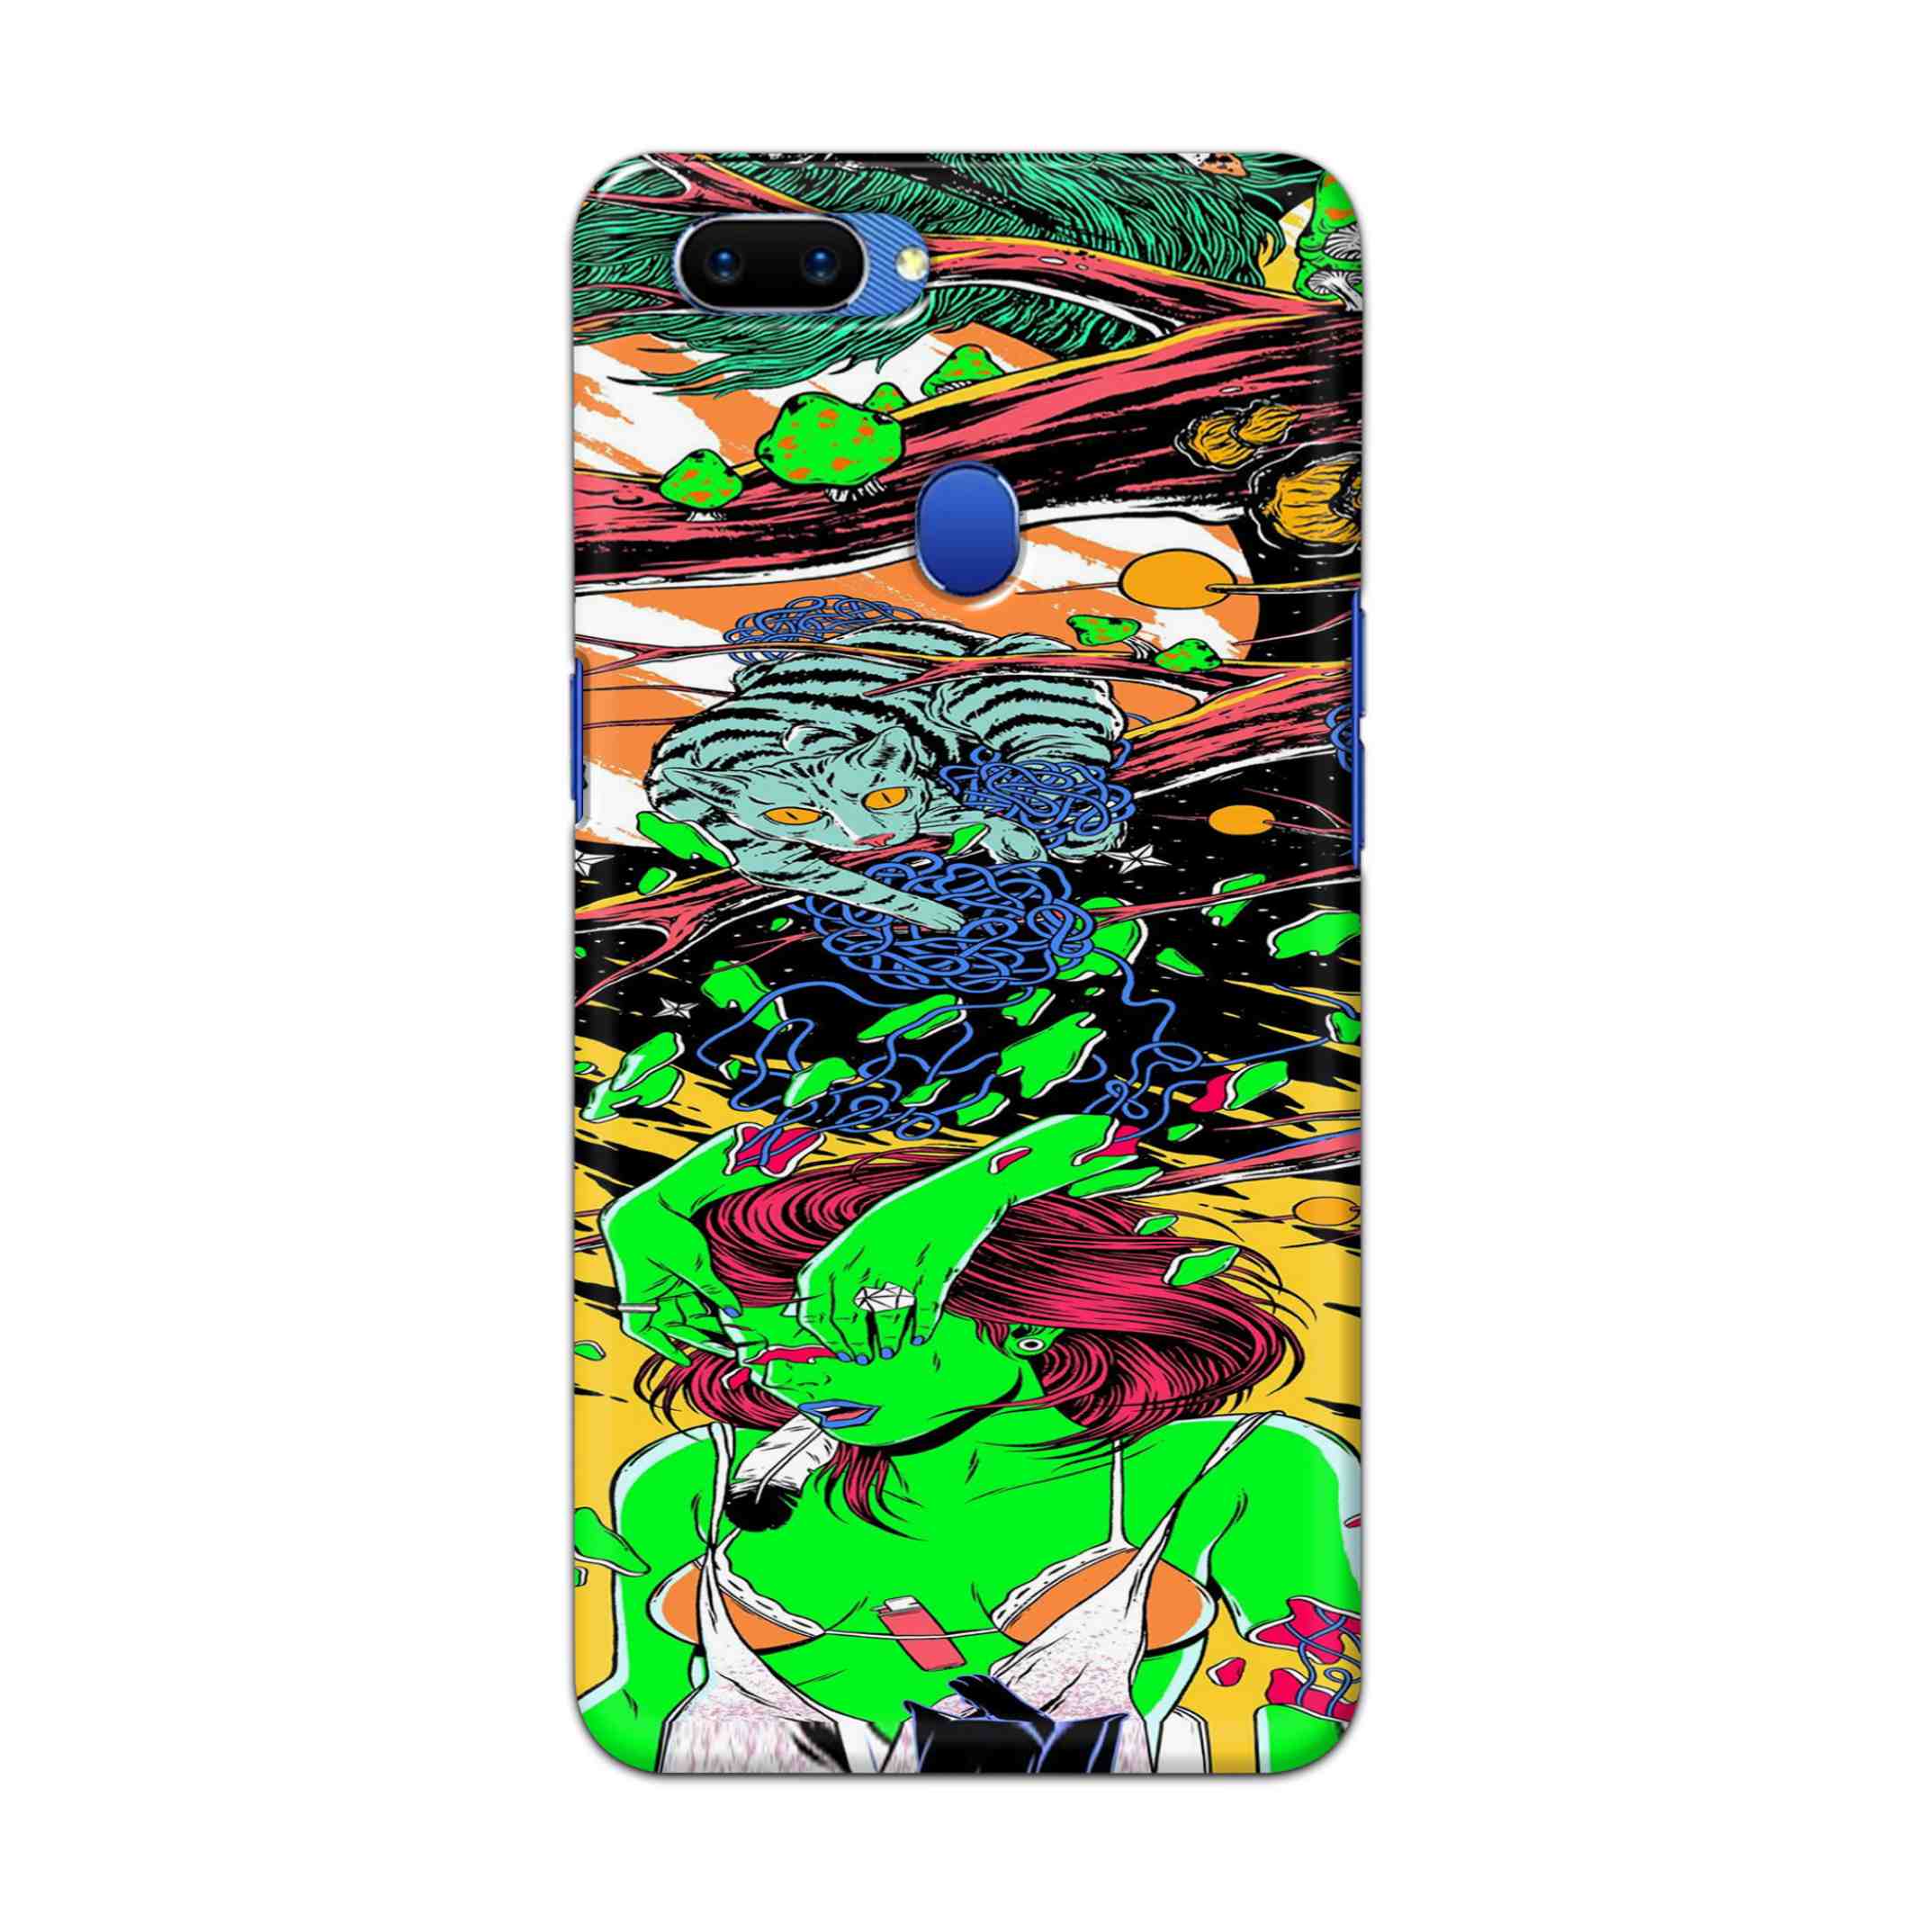 Buy Green Girl Art Hard Back Mobile Phone Case Cover For Oppo A5 Online